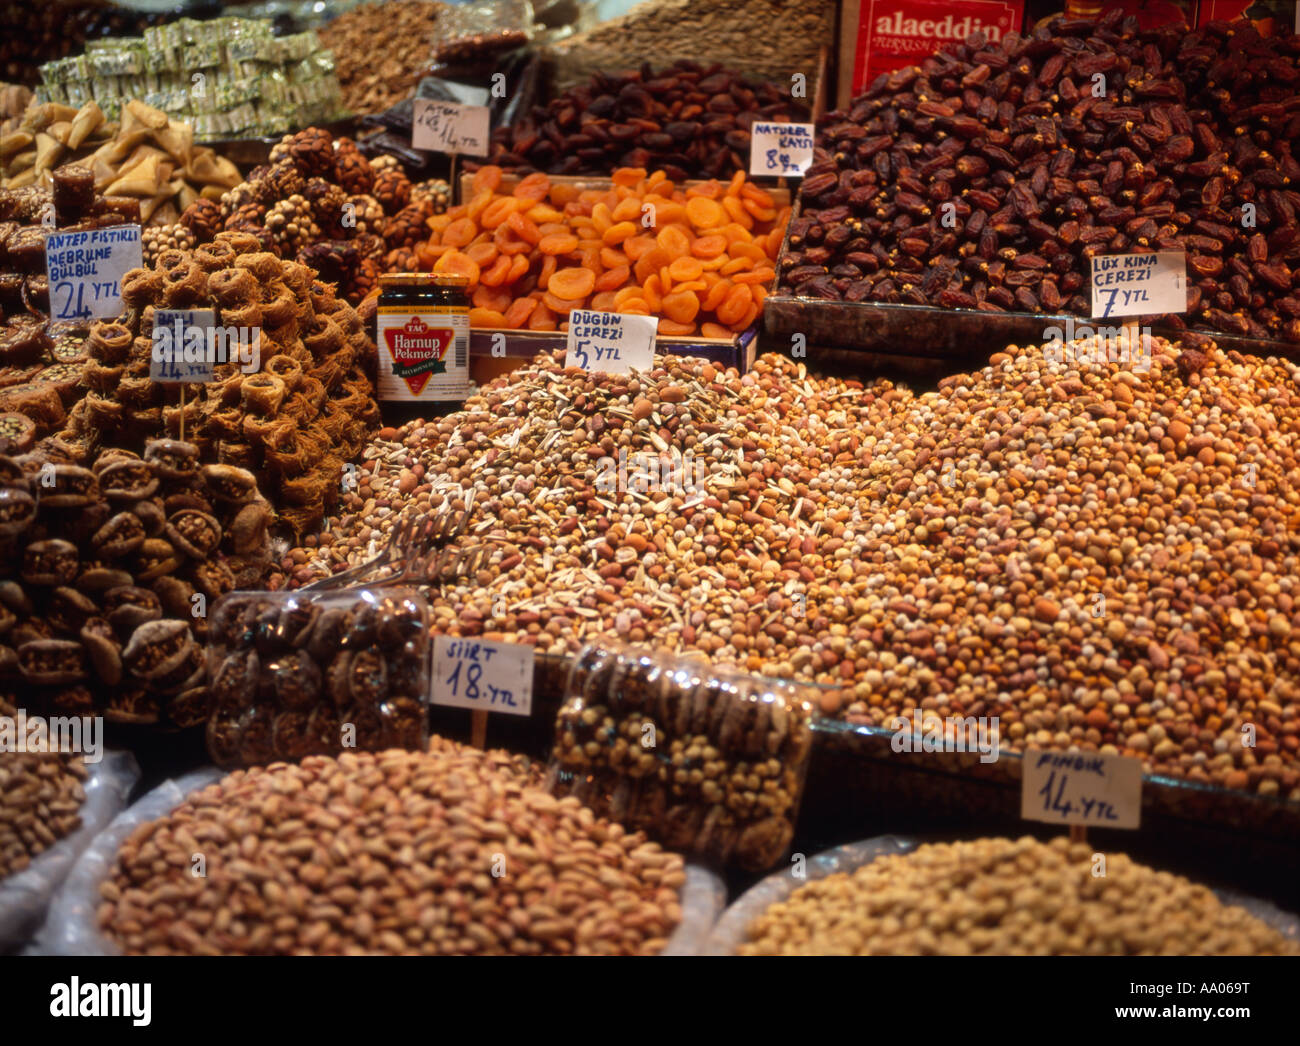 Frutta secca e display del dado al mercato delle spezie in Marmara, Istanbul, Turchia Foto Stock